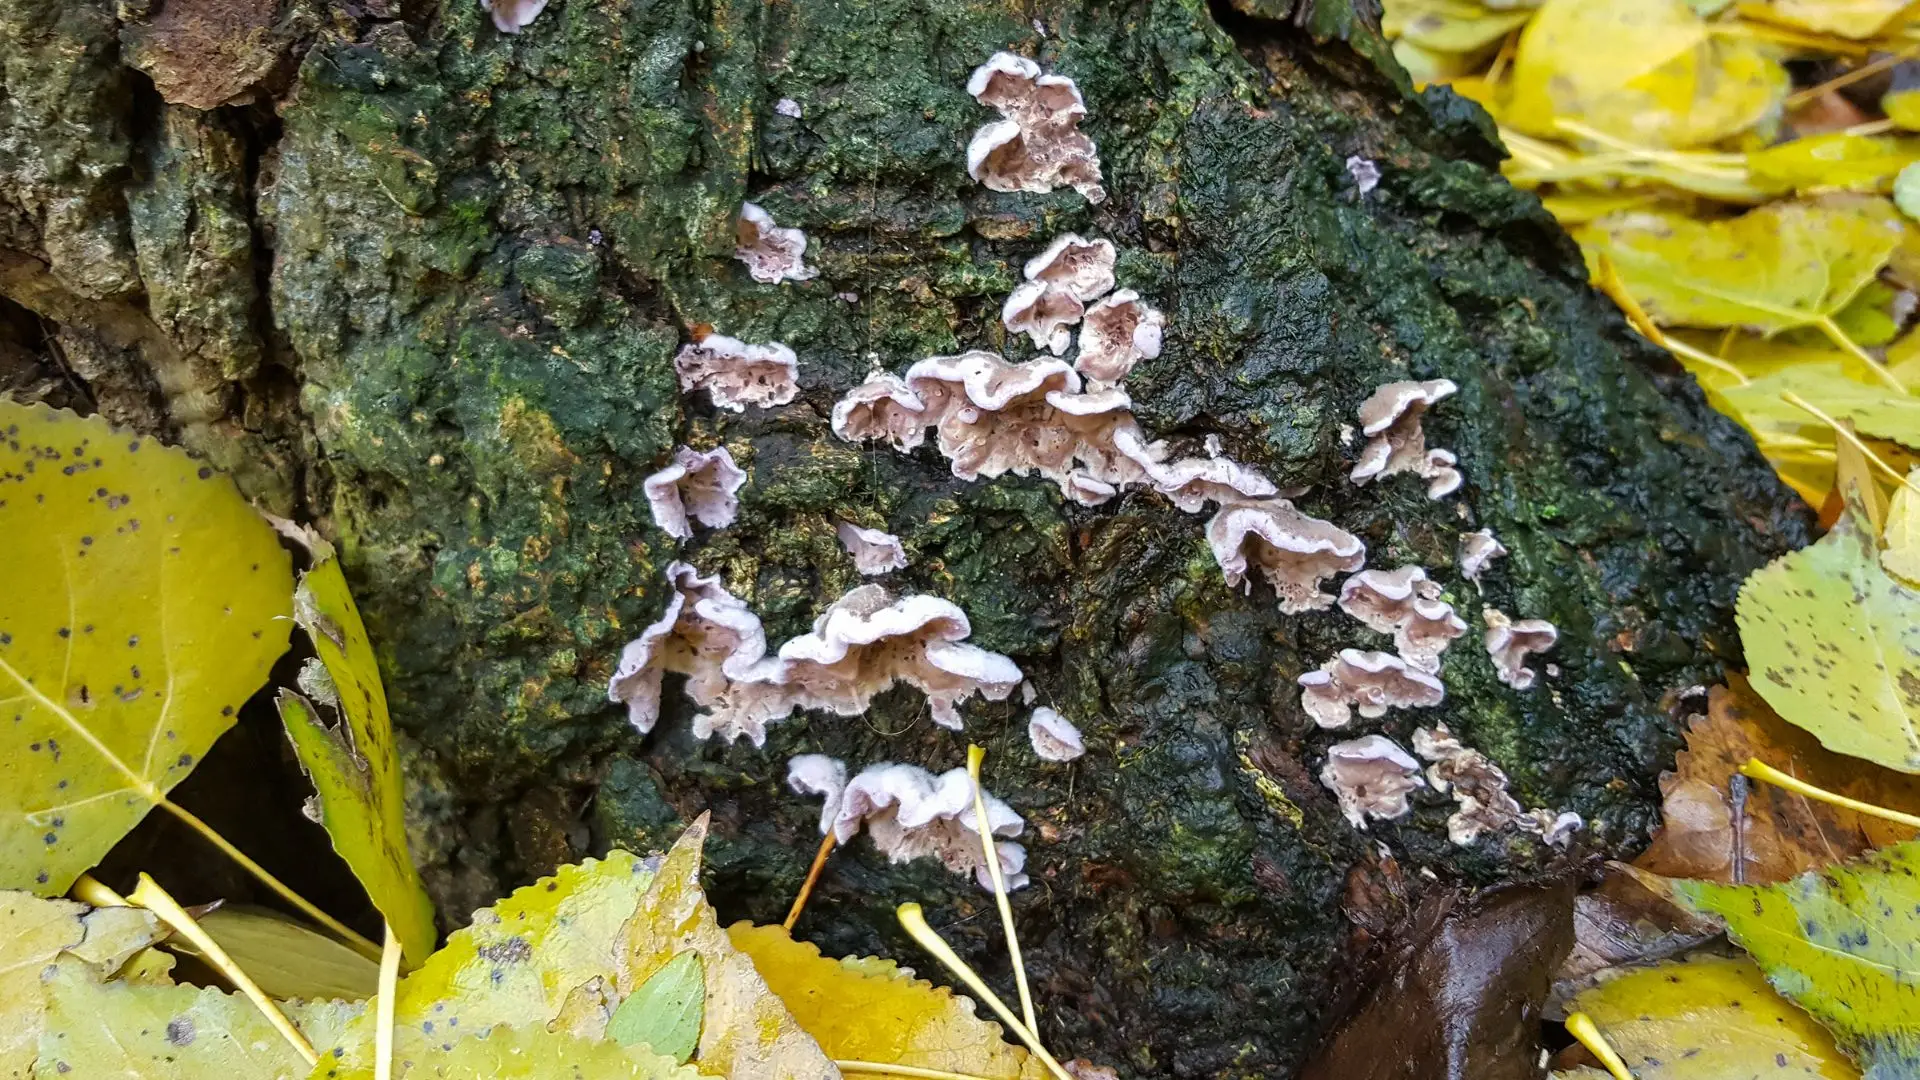 Silverleaf fungus- fungo responsável por matar plantas